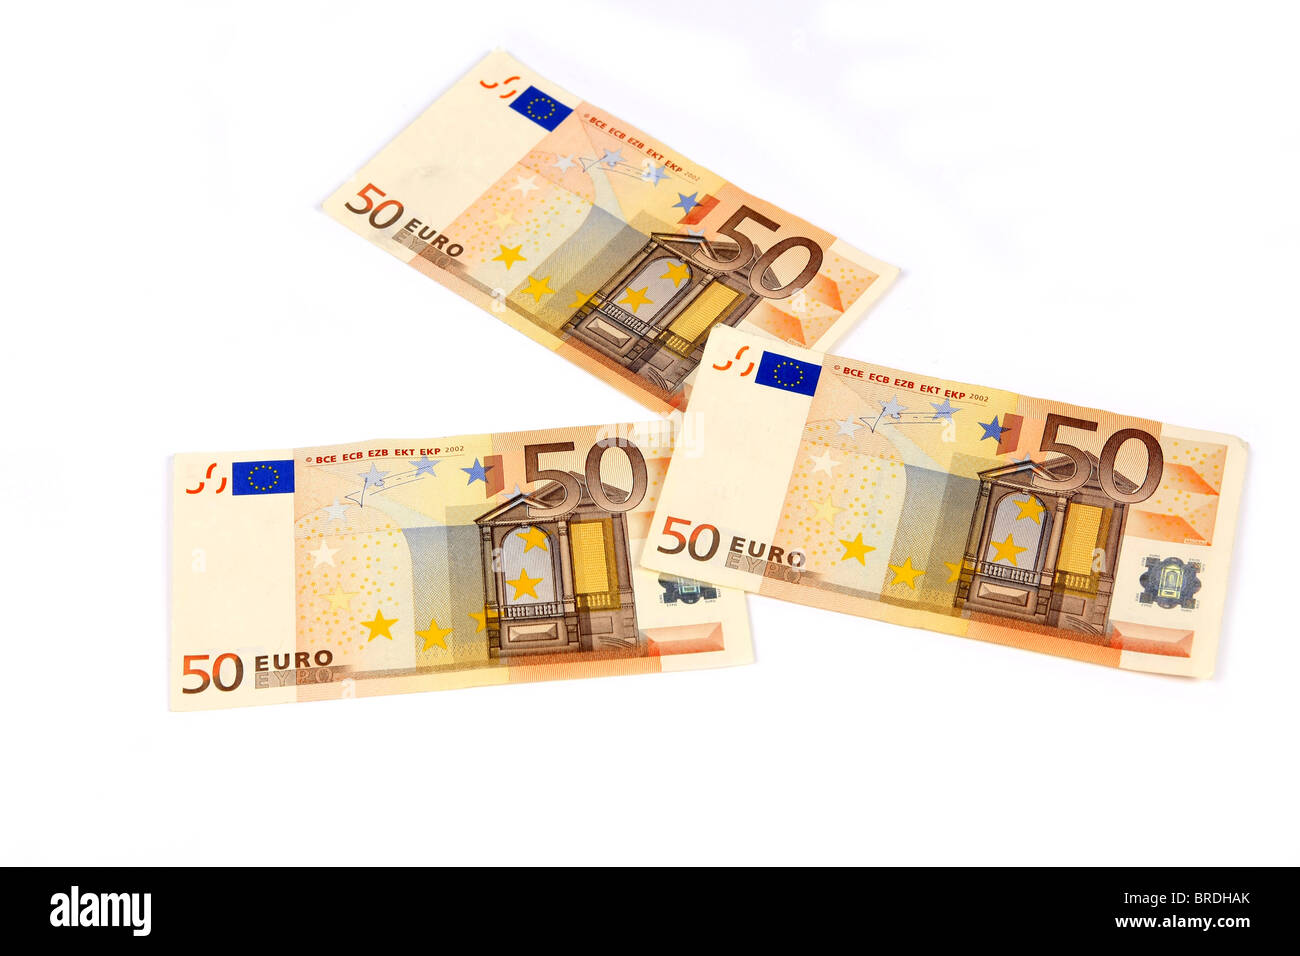 huh semplice perline banconota da 50 euro nuova amazon Lender prova Roux